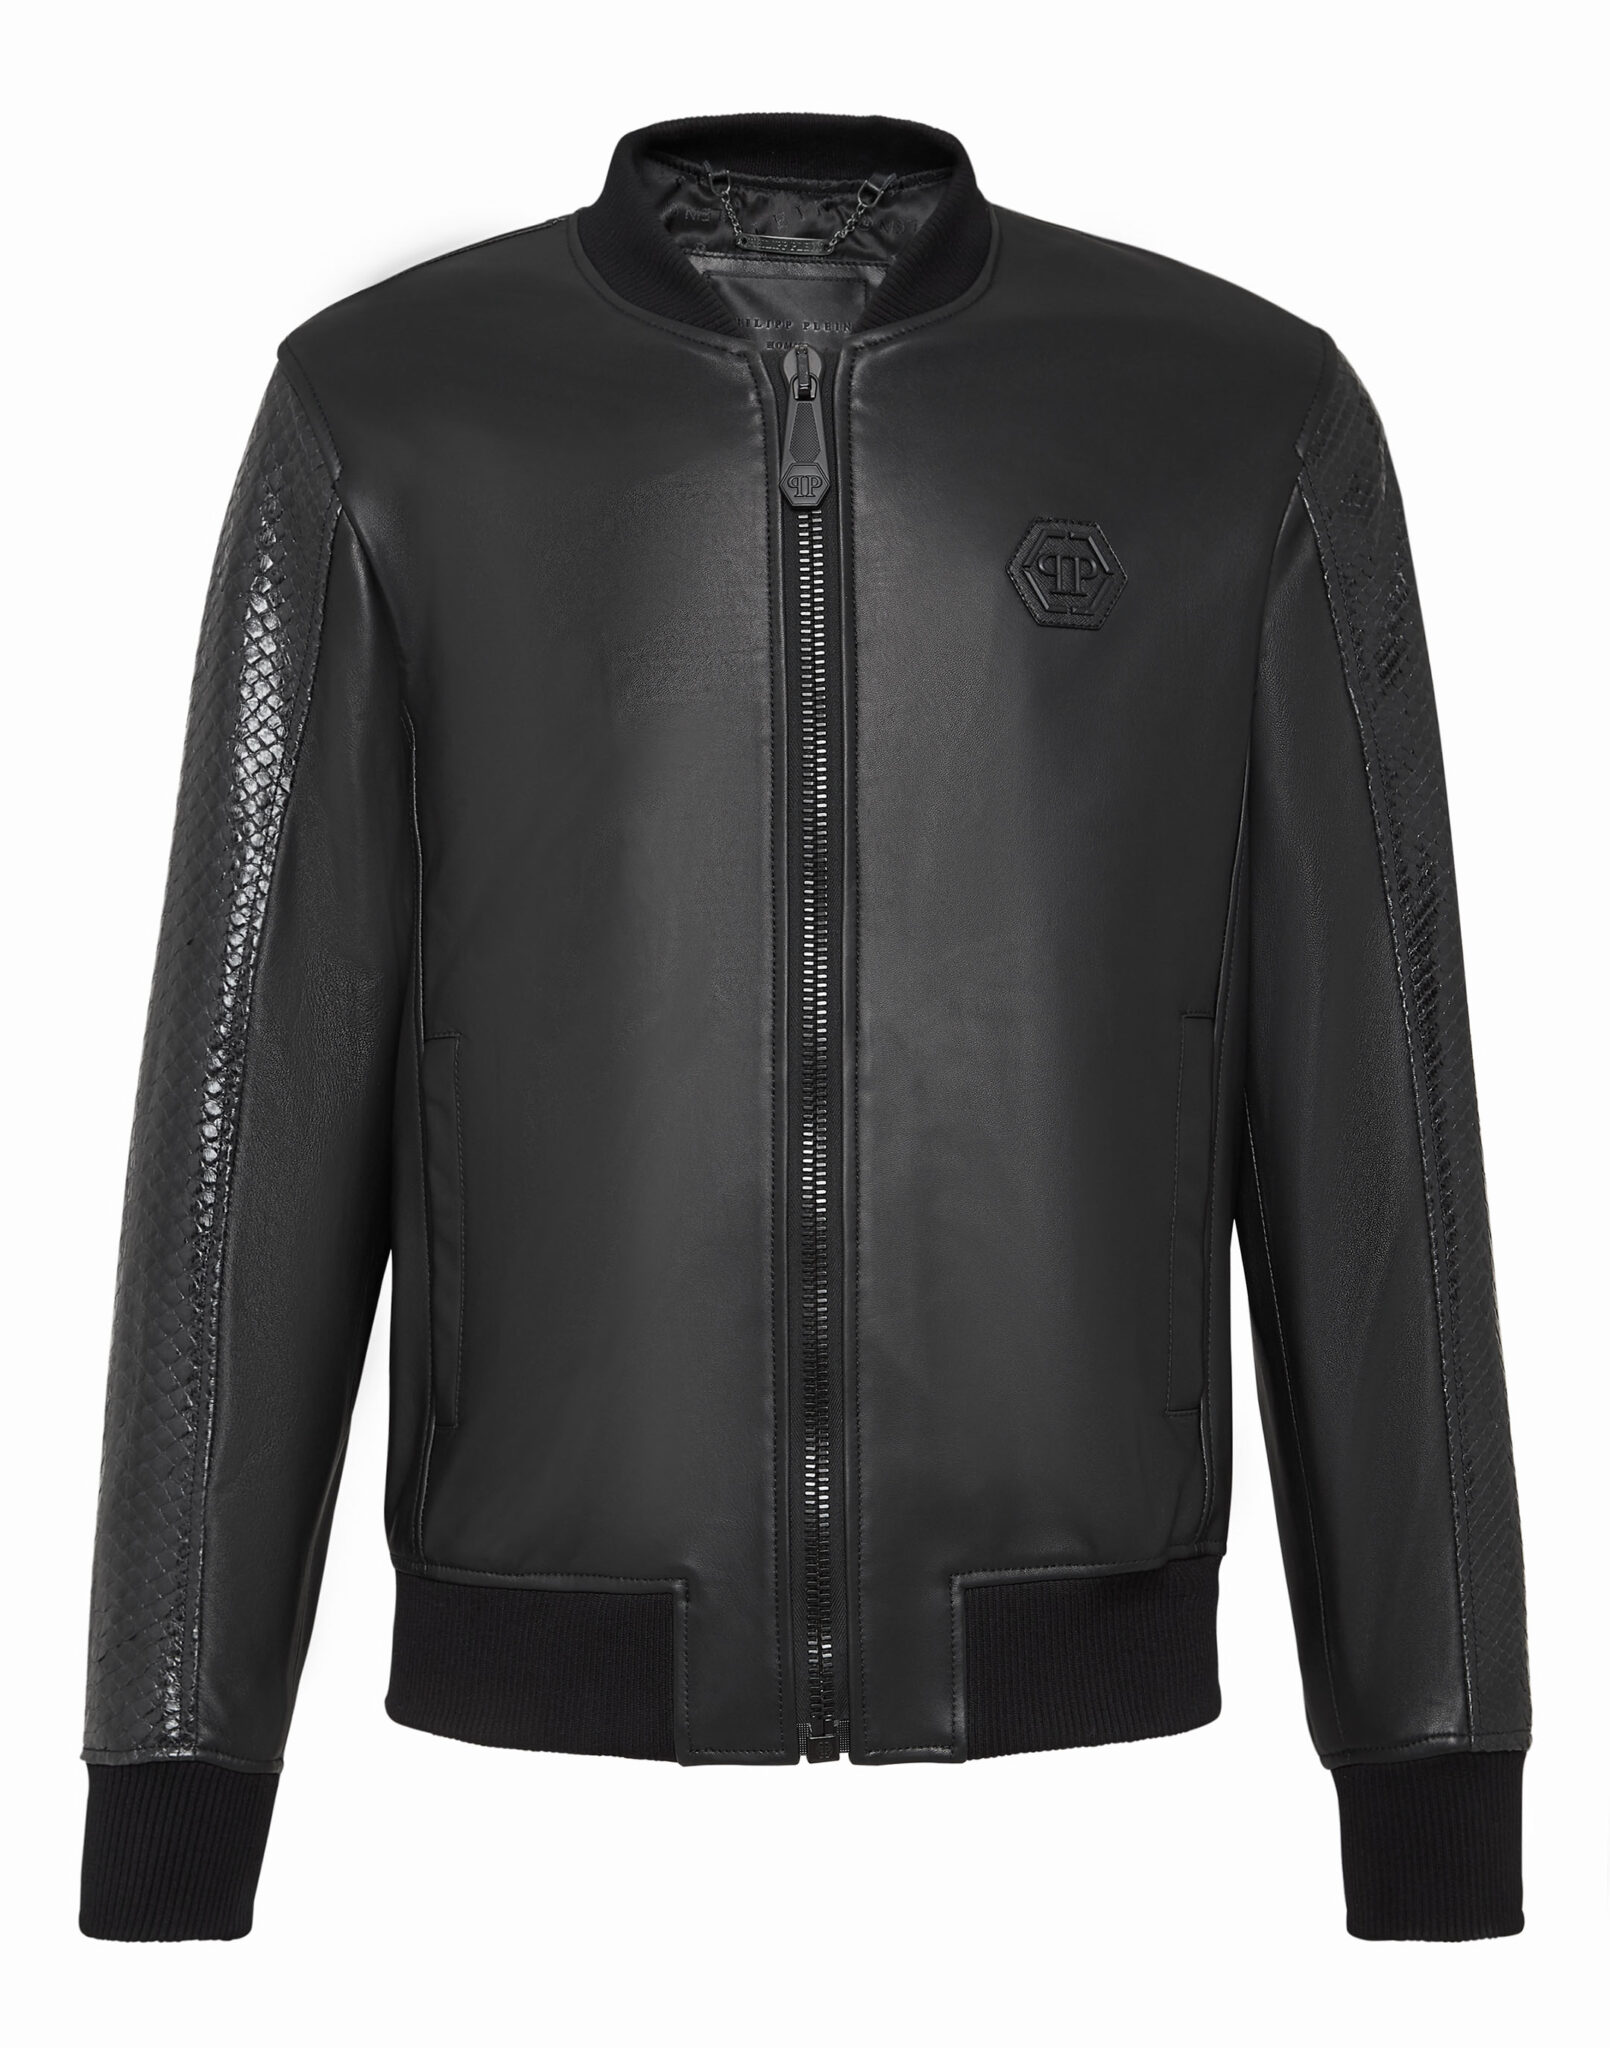 Philipp Plein Snake Skin Jacket - Leather Guys: Luxury Leather Jackets